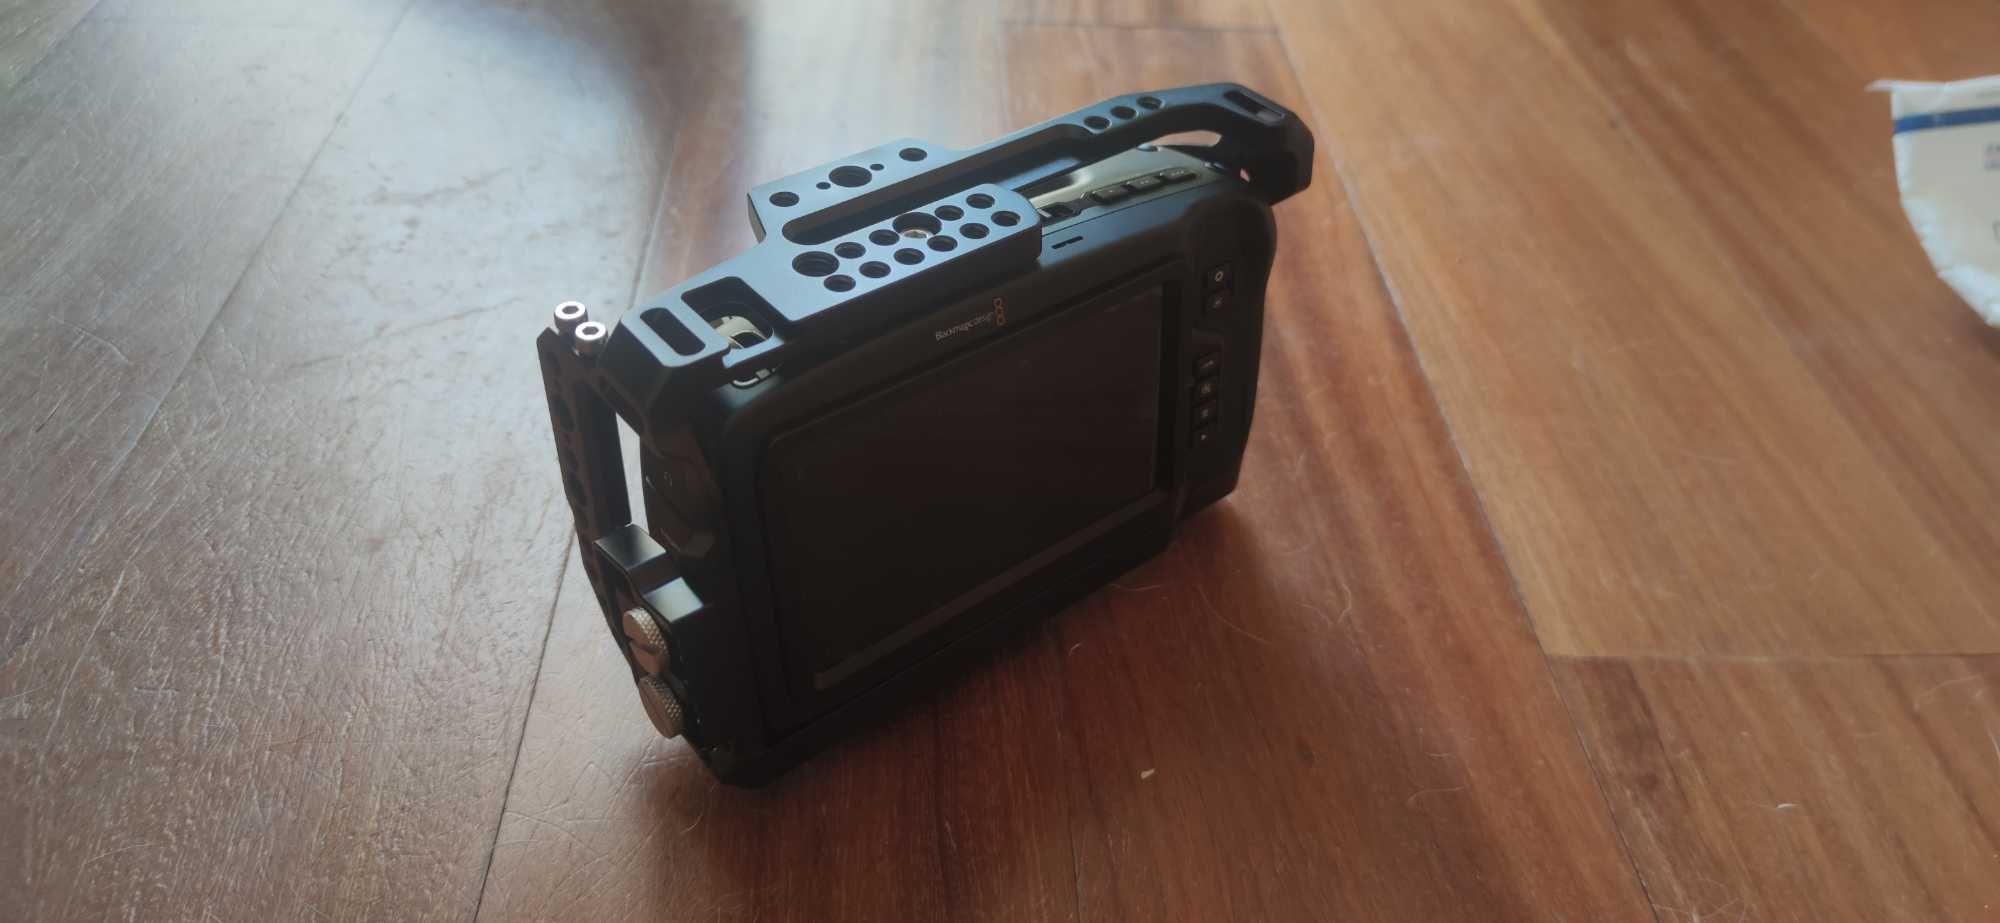 Blackmagic Pocket Cinema Camera 4k (BMPCC4K) + Cage SmallRig